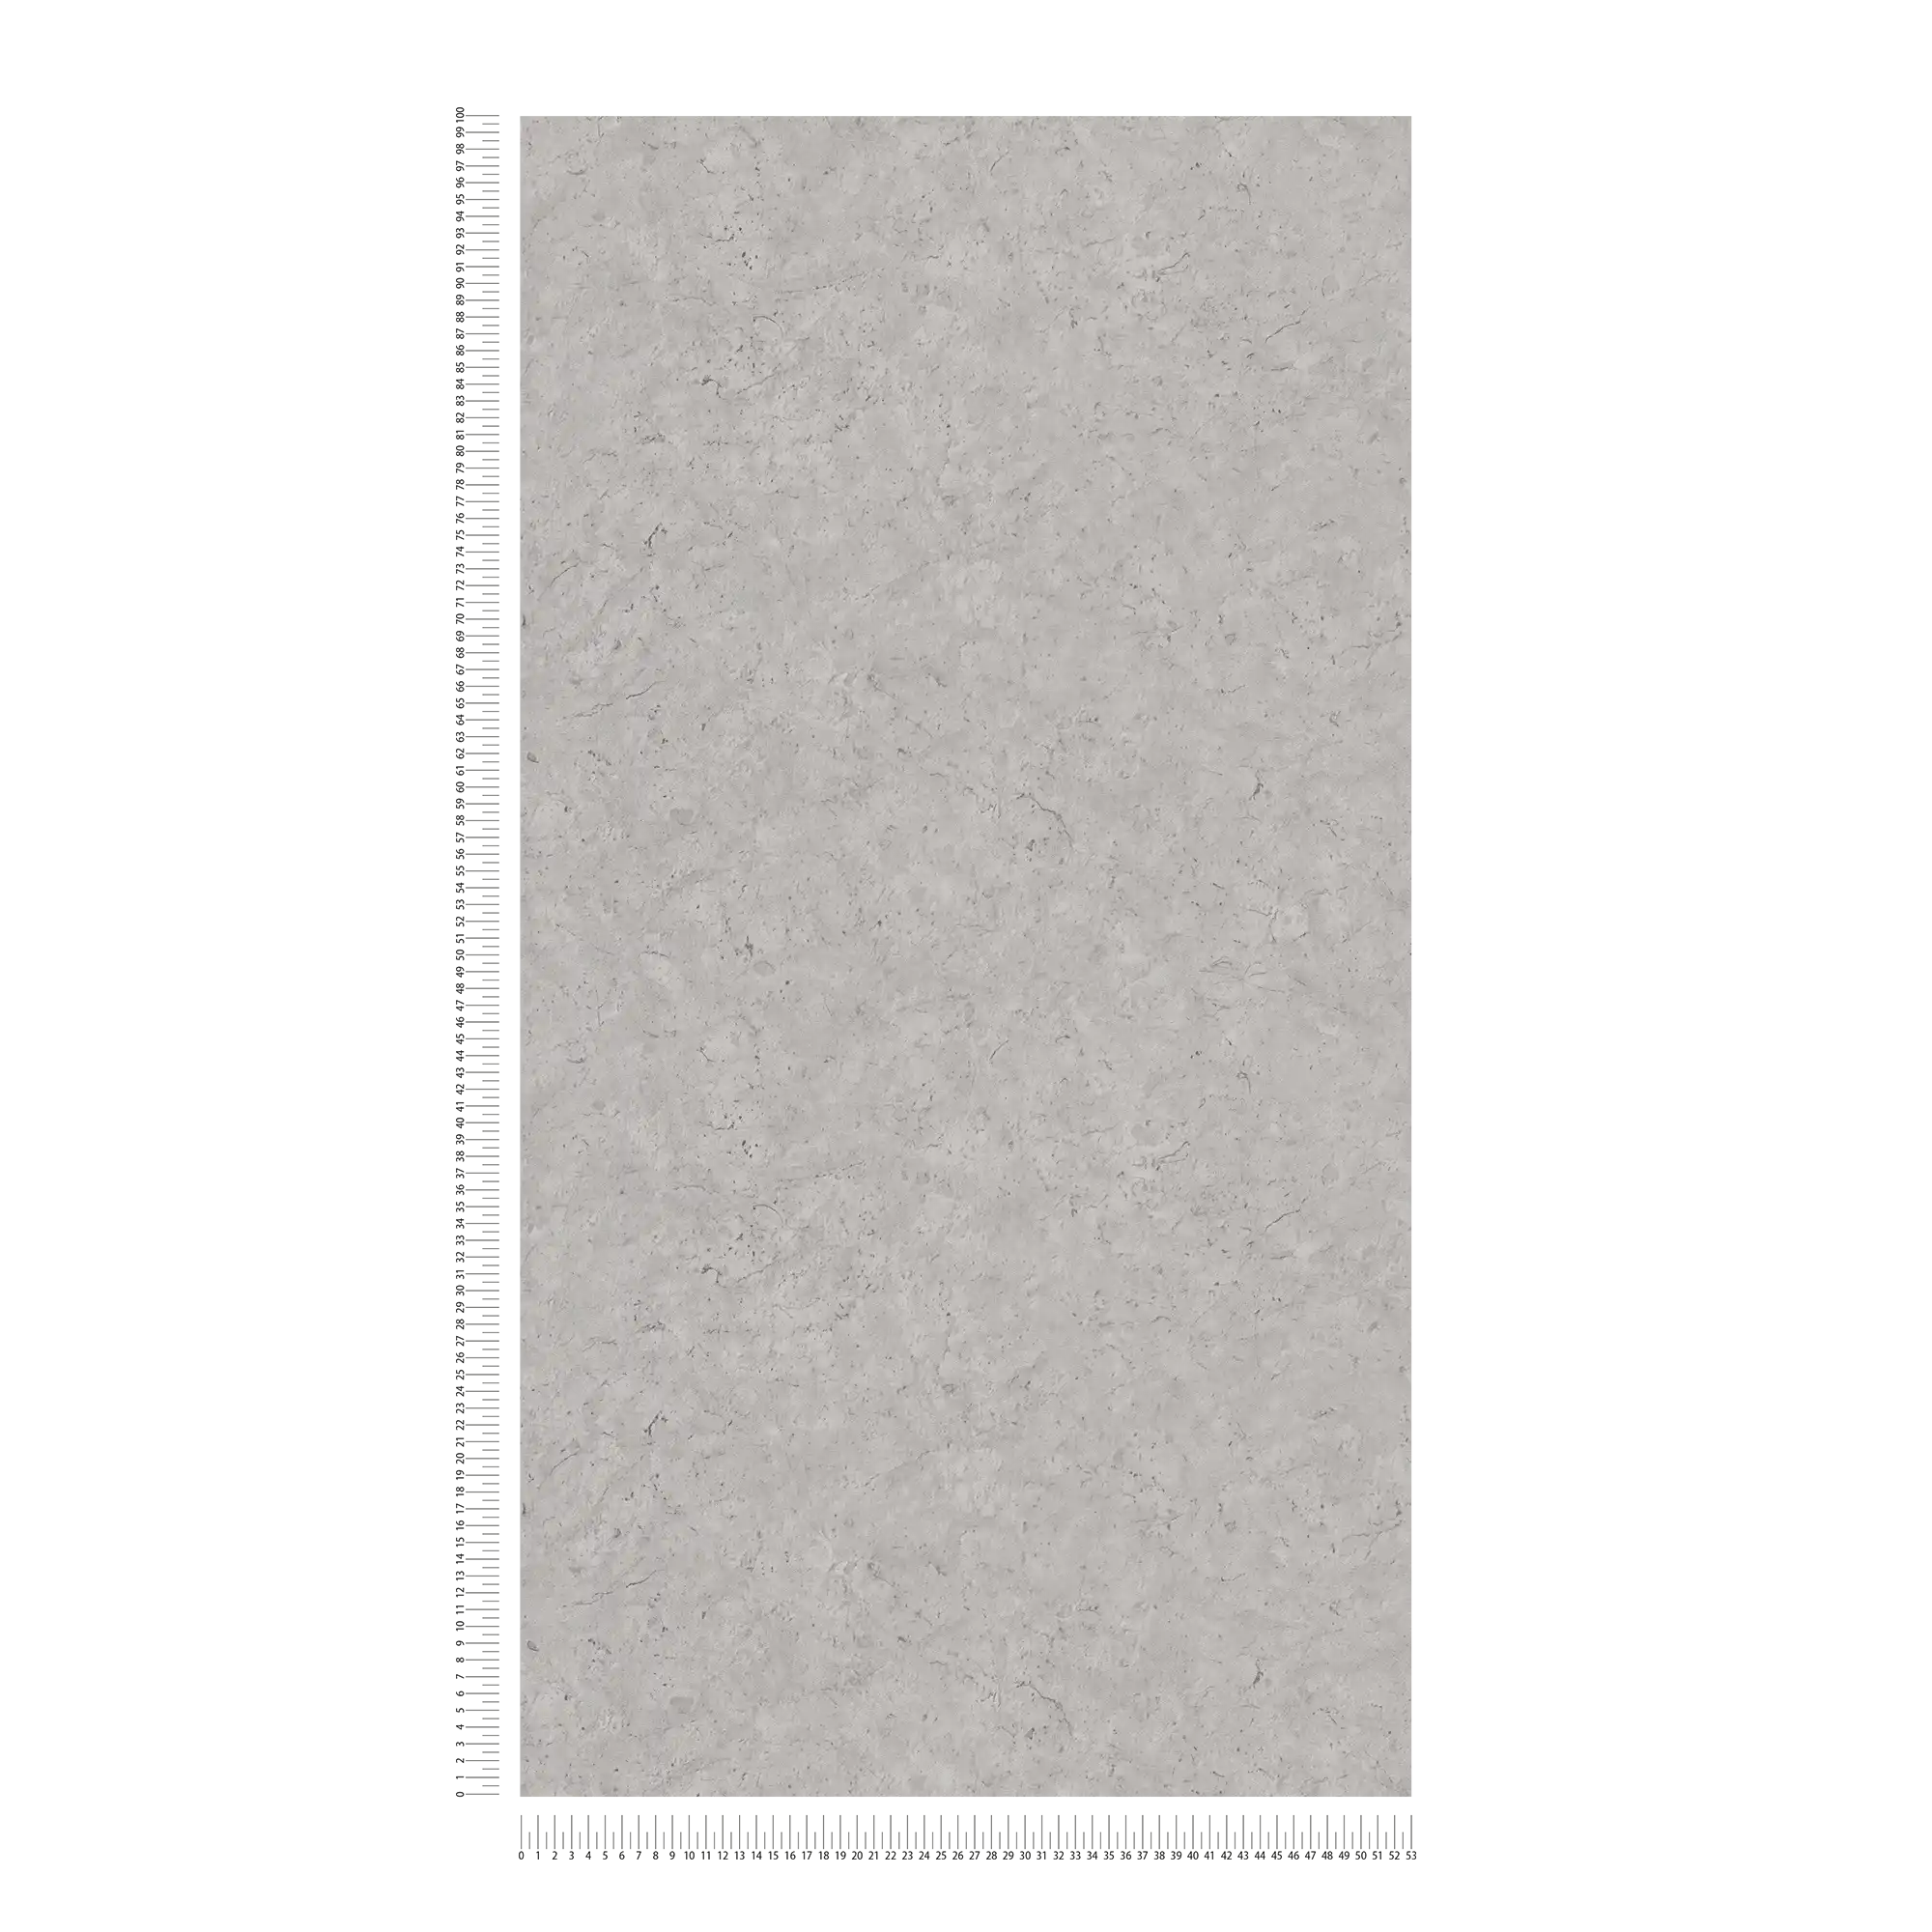             Betonlook behang met discreet patroon - grijs
        